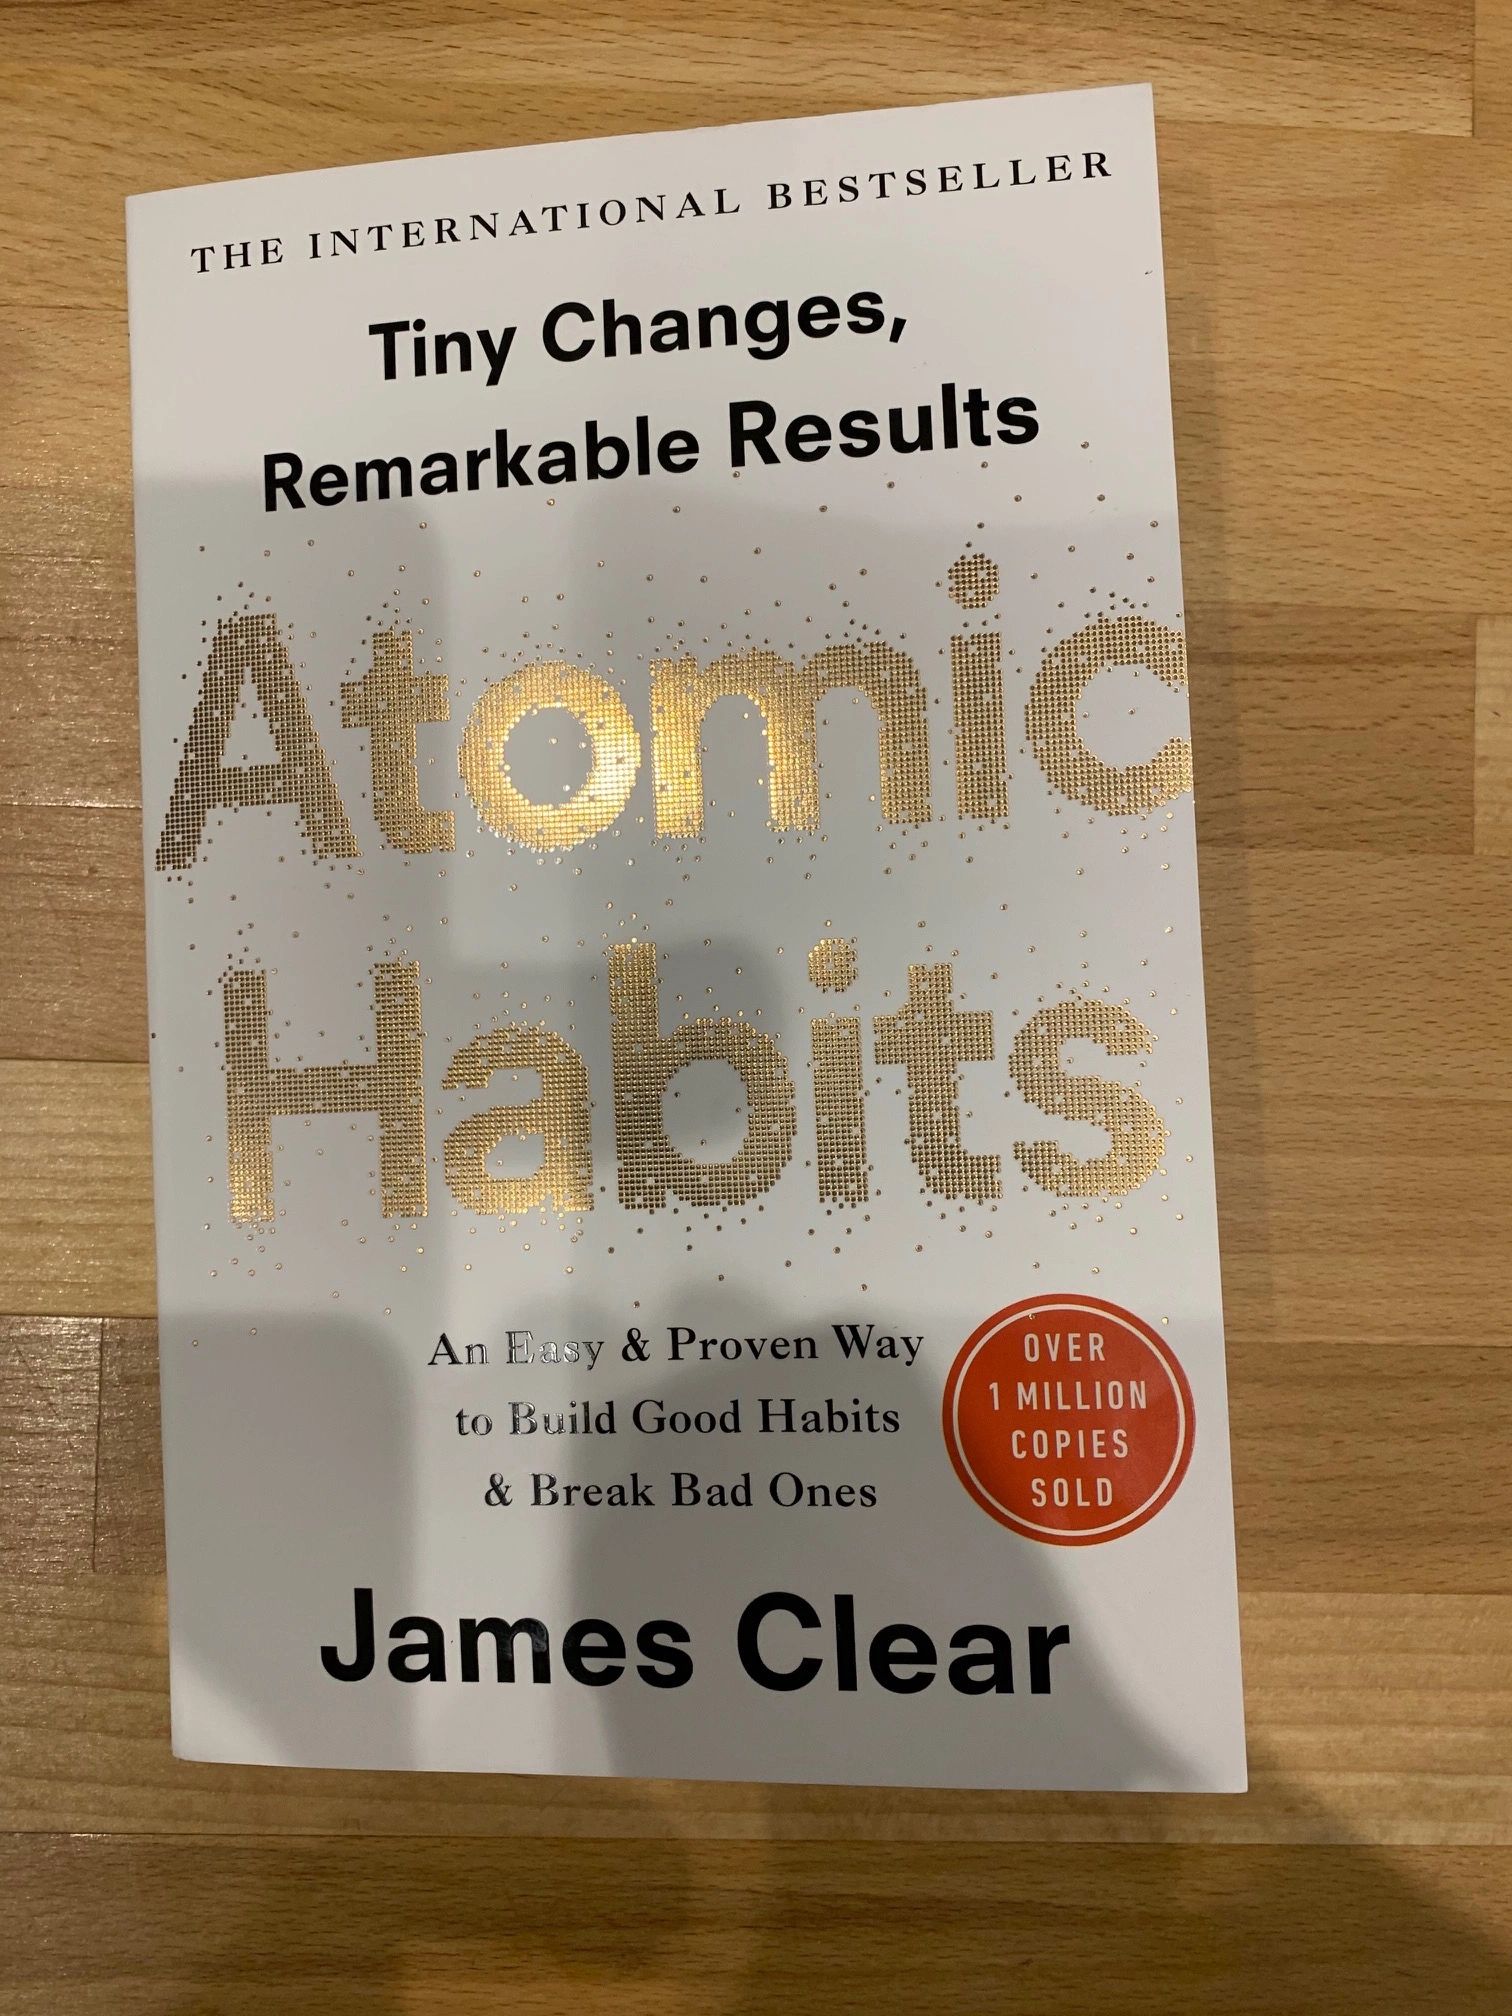 atomic habits book pdf download free